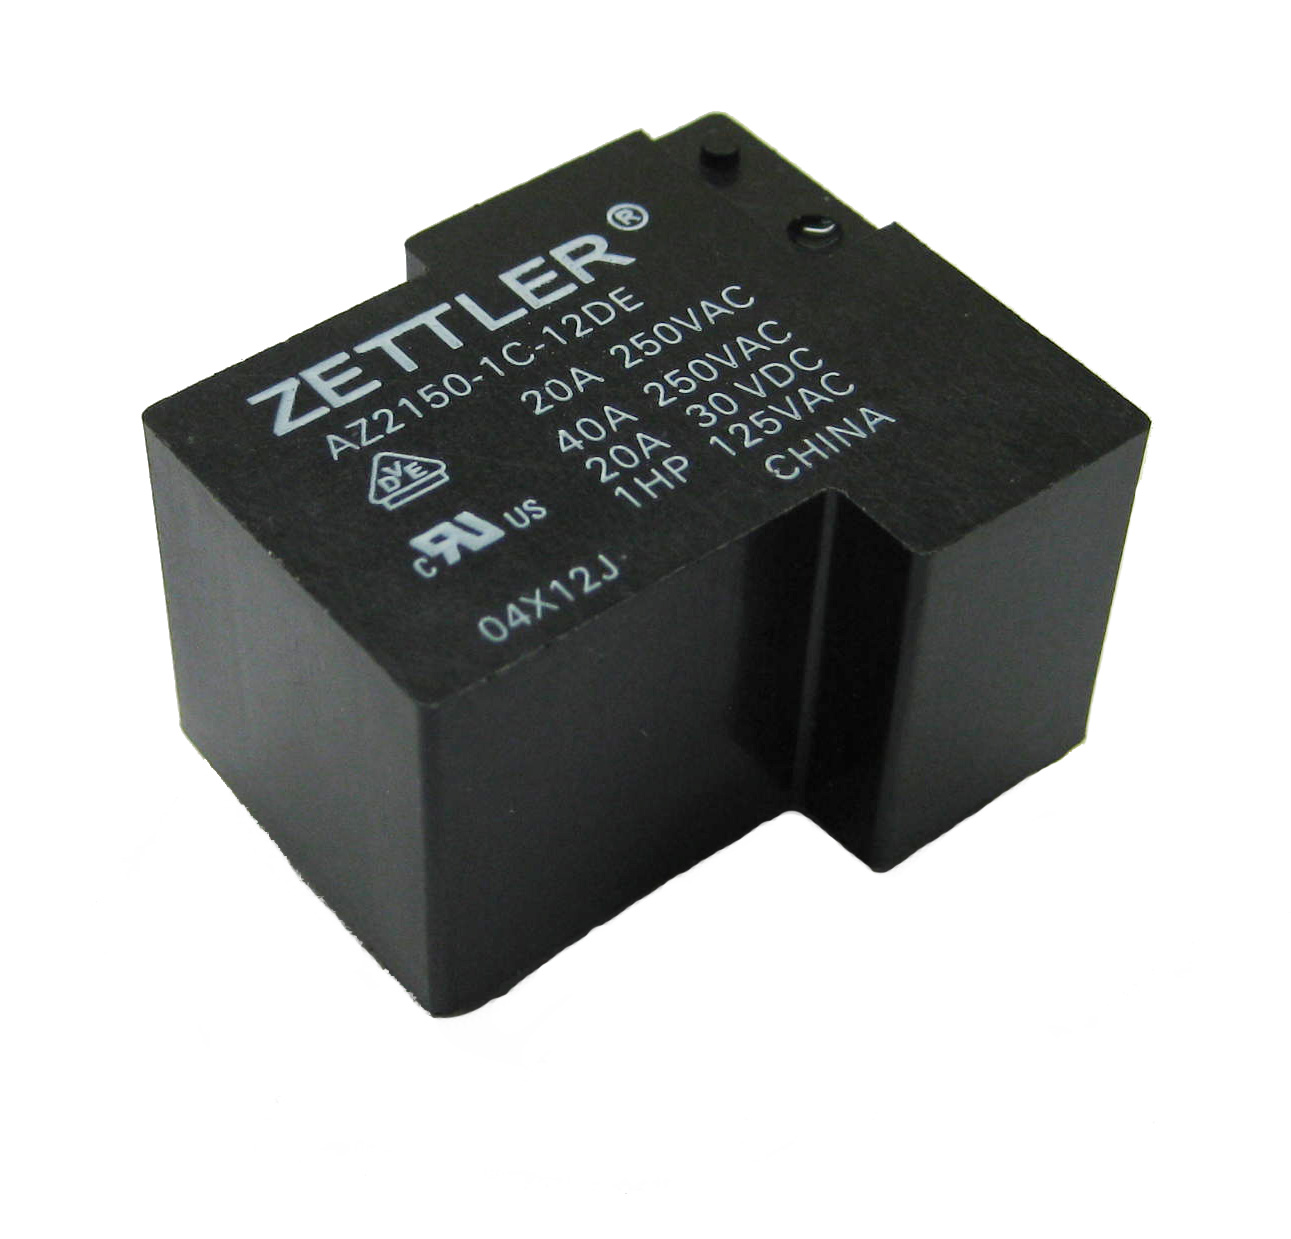 1 PC AZ2150-1A-15DE Zettler Relay Relay SPST-NO 15VDC 40A 256R NEW #WP 